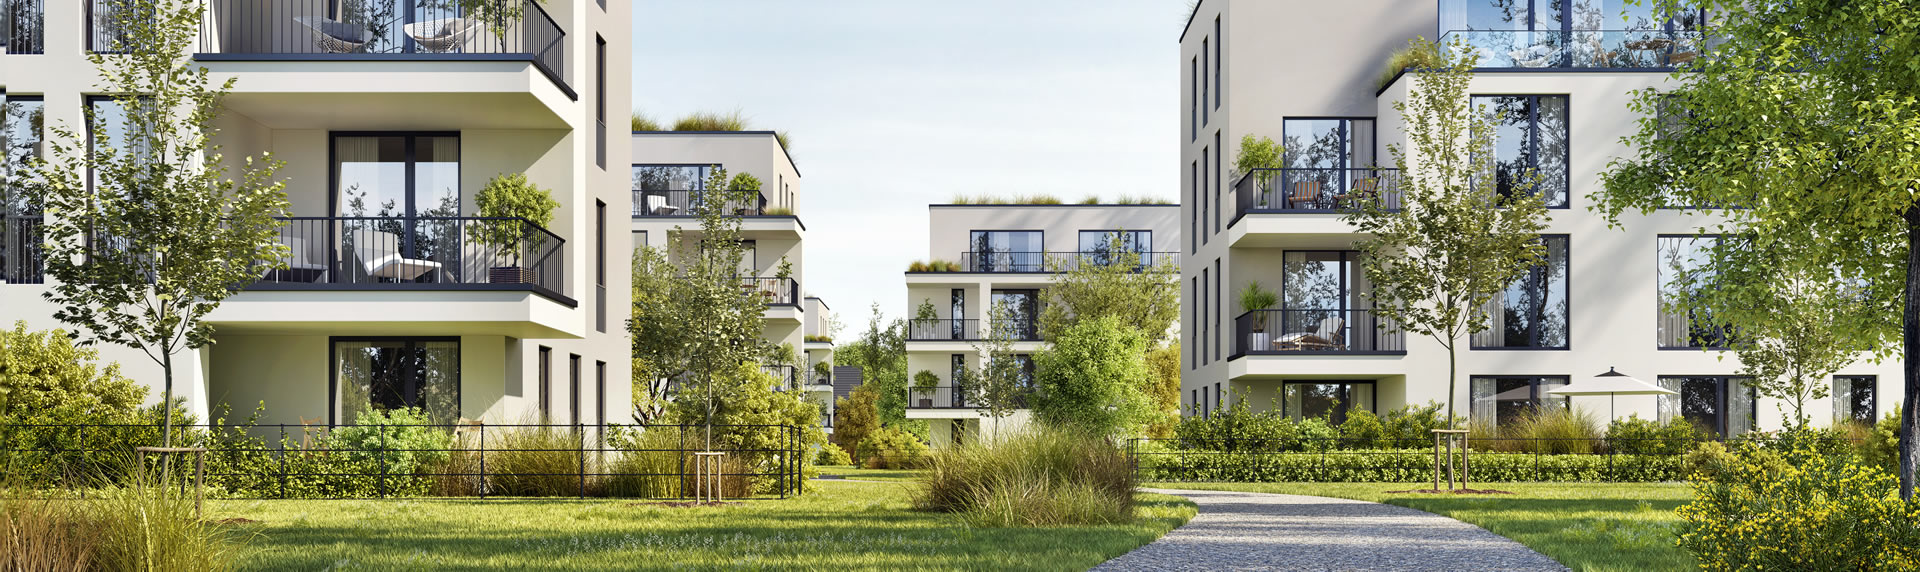 Immobilie vermieten in Regensburg Vermietung von Haüsern Wohnungen und Gewerbeimmobilien